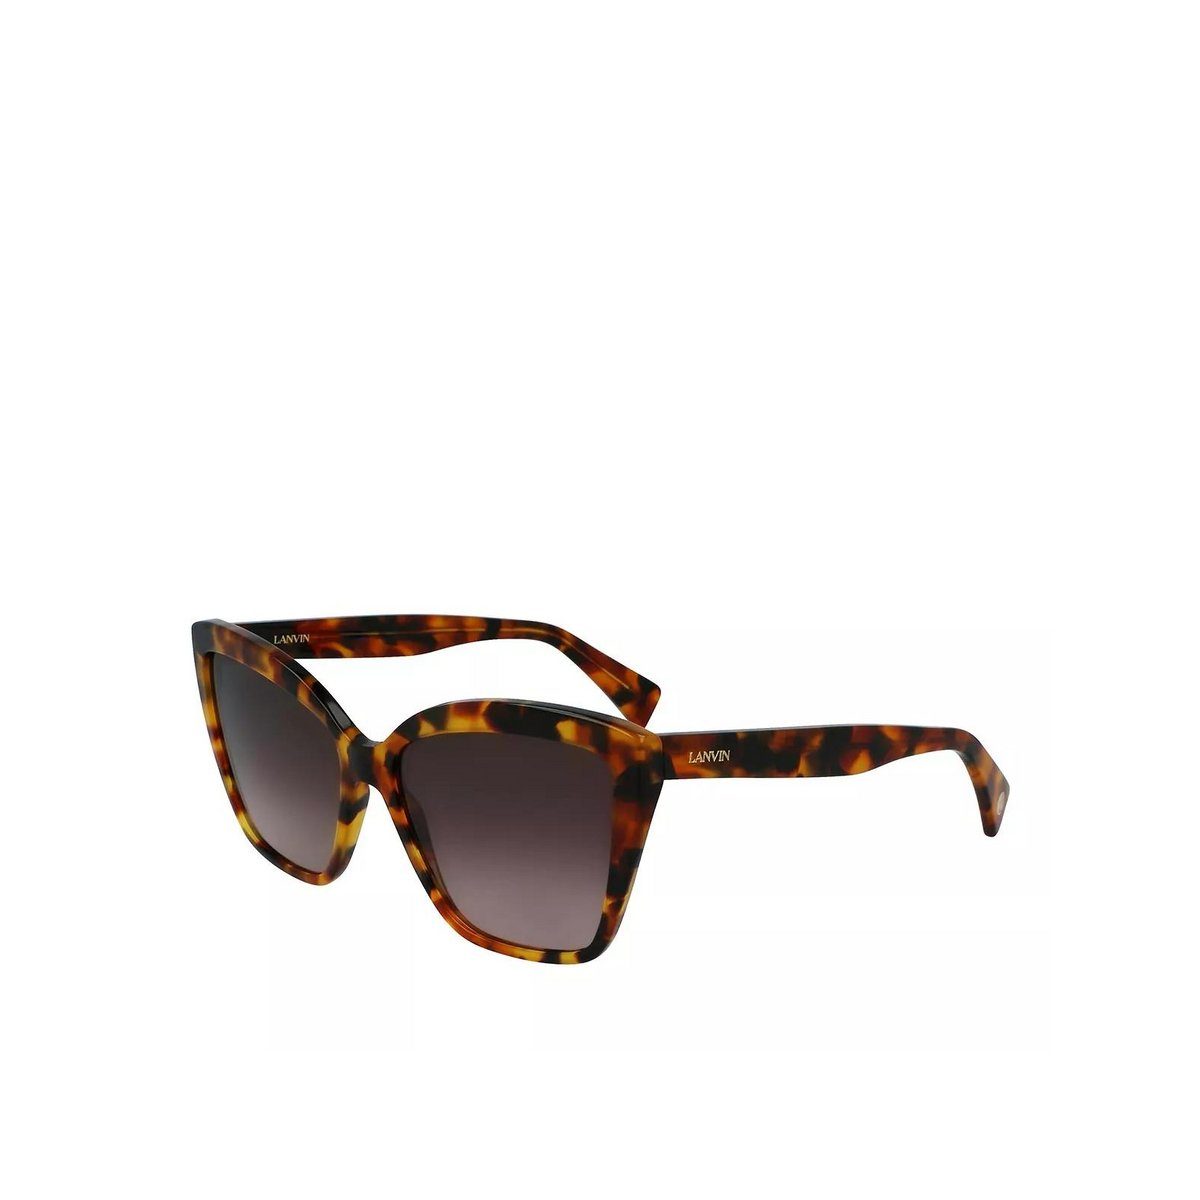 LANVIN Sonnenbrille beige (1-St)